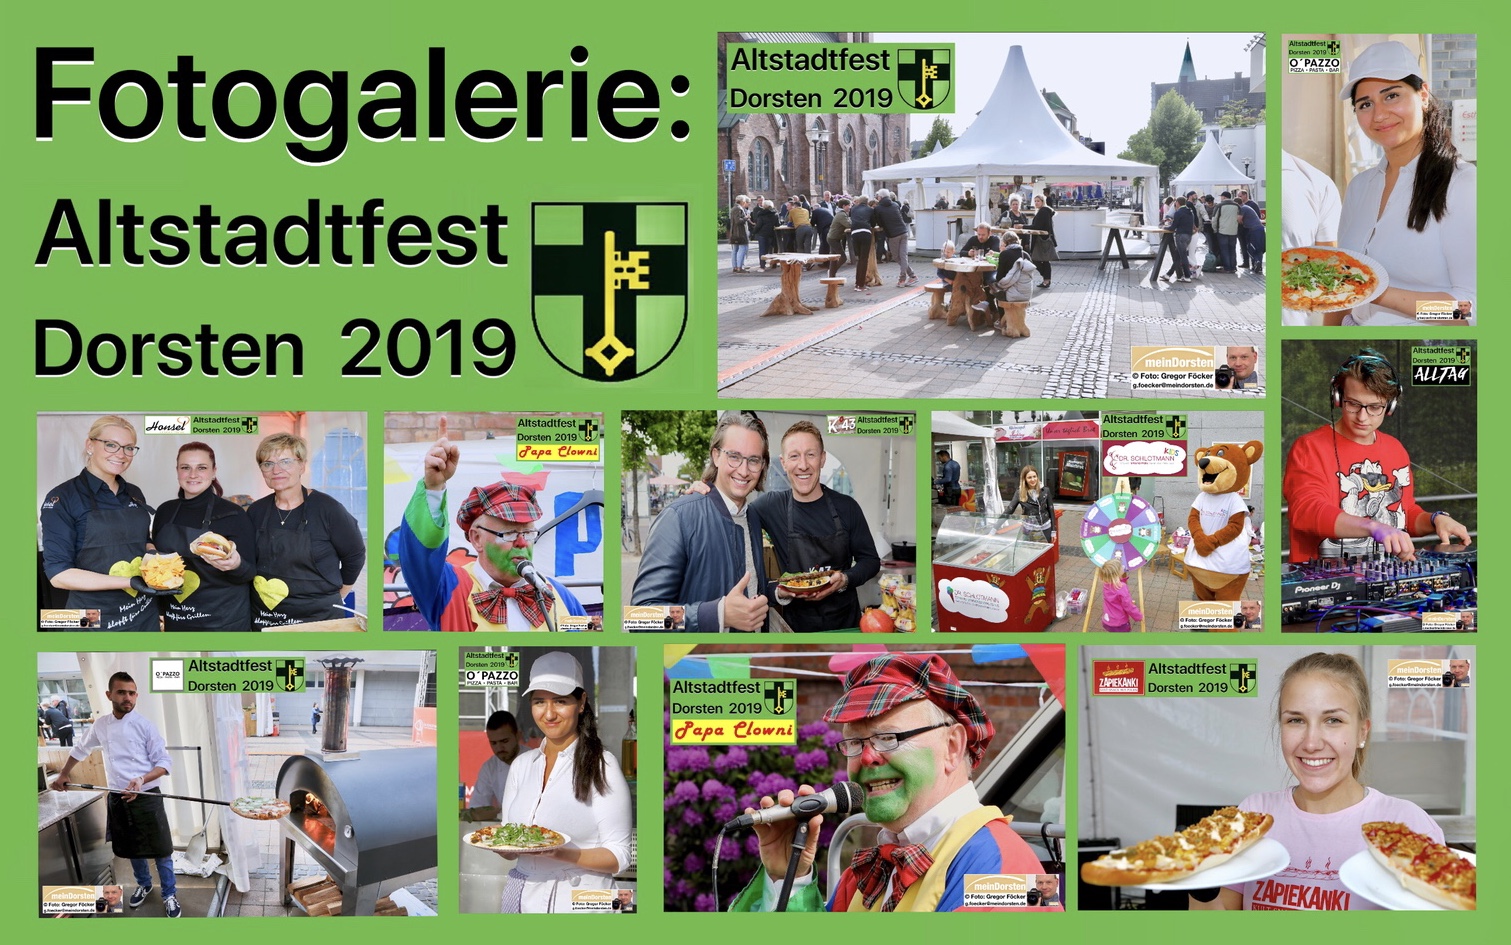 Fotogalerie Altstadtfest 2019: Die Bilder des 4-tägigen Events in Dorsten